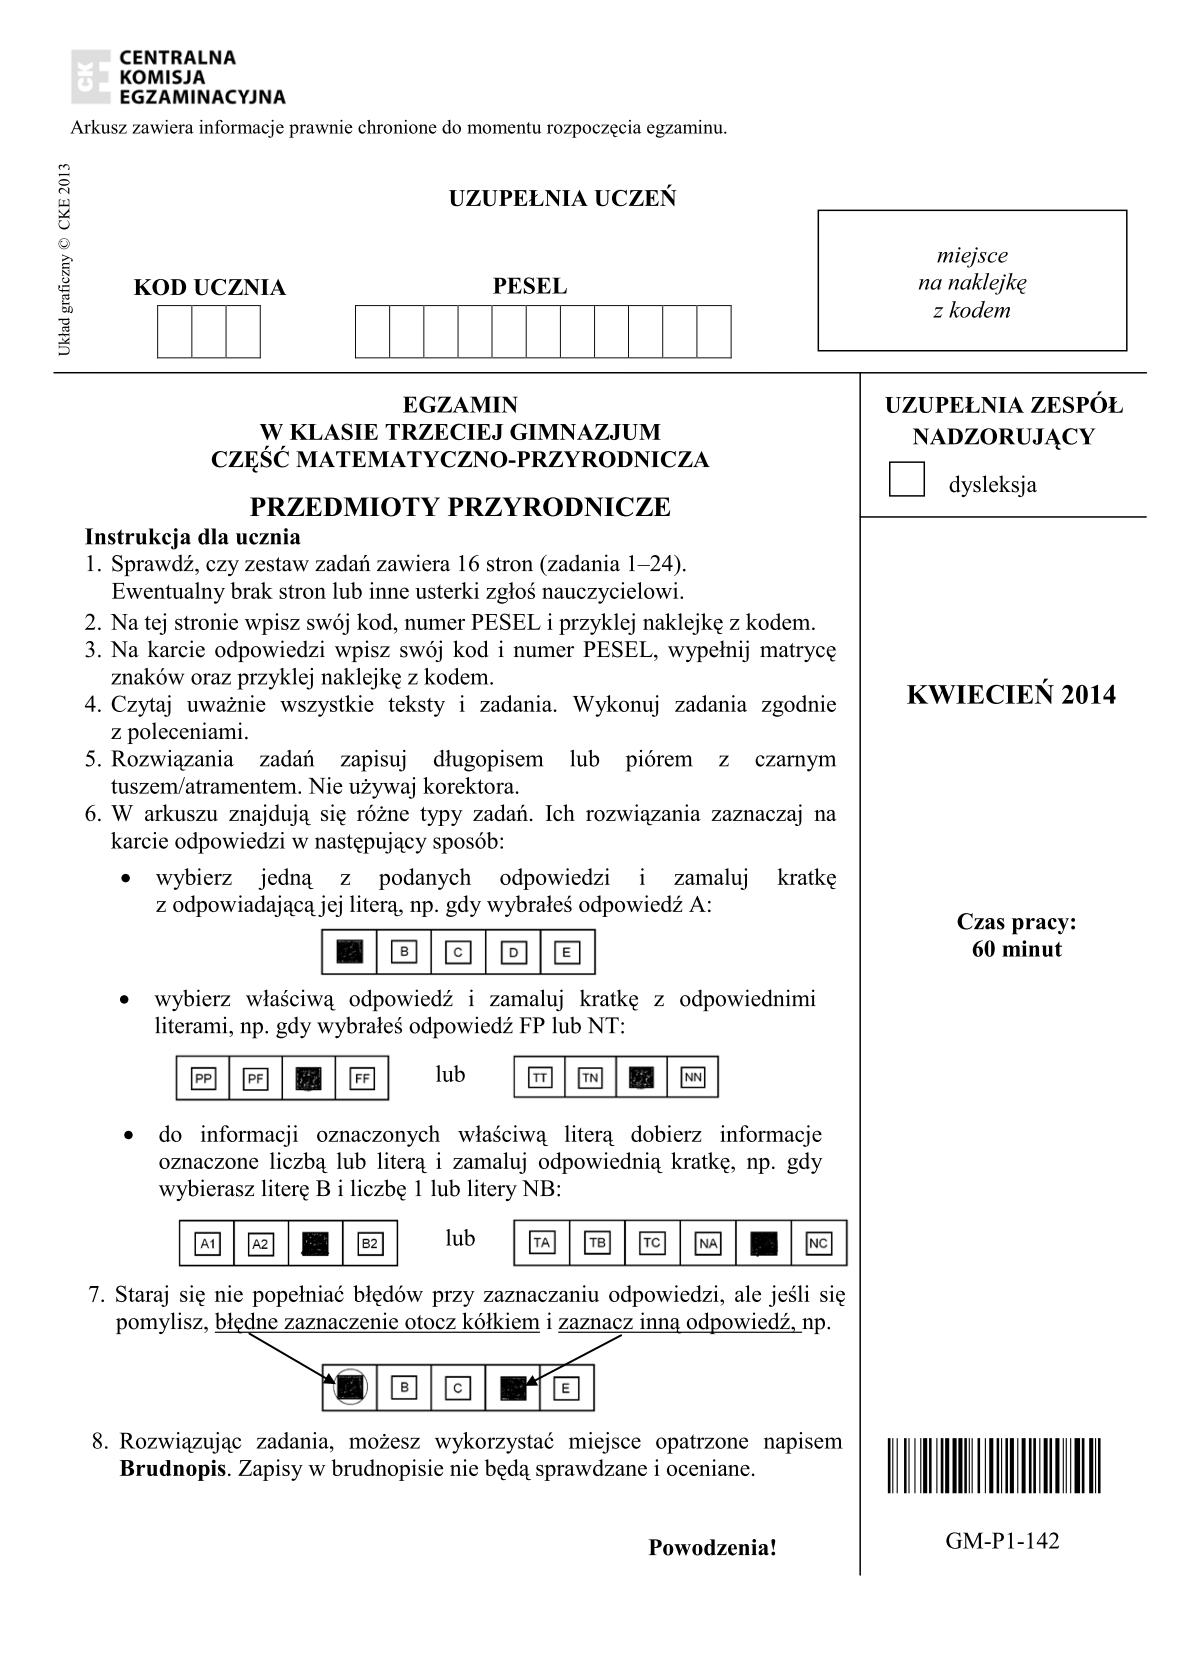 pytania-przedmioty-przyrodnicze-egzamin-gimnazjalny-25.04.2014-1